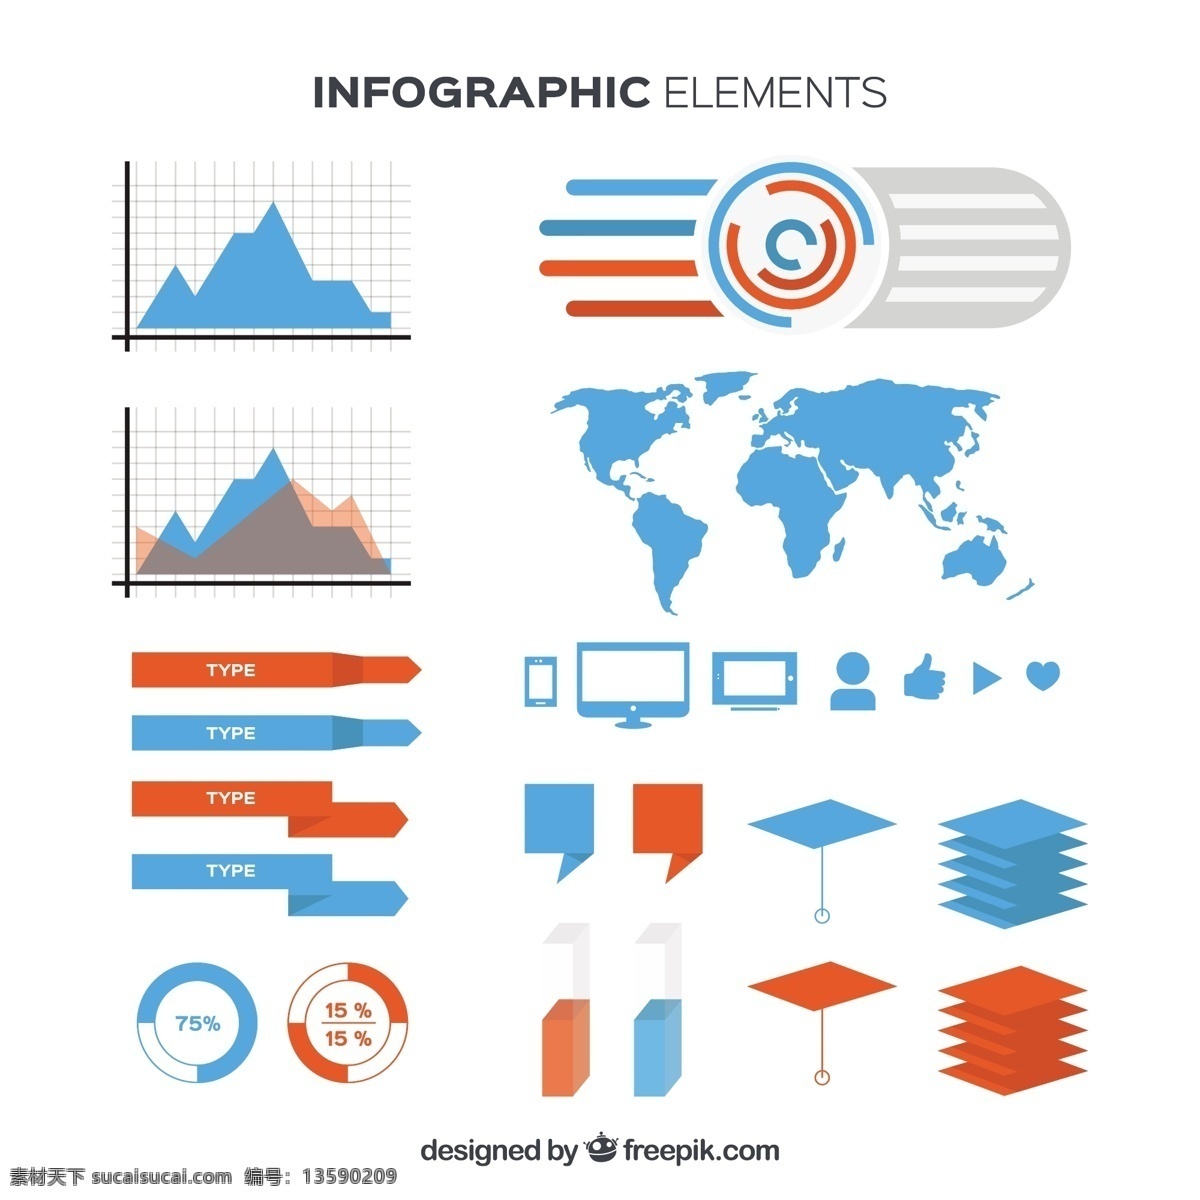 蓝色 橙色 图表 元素 业务 模板 地图 蓝 营销 橙 图 丰富多彩的 平坦的 流程 信息图表元素 图表模板 数据 信息 信息元素